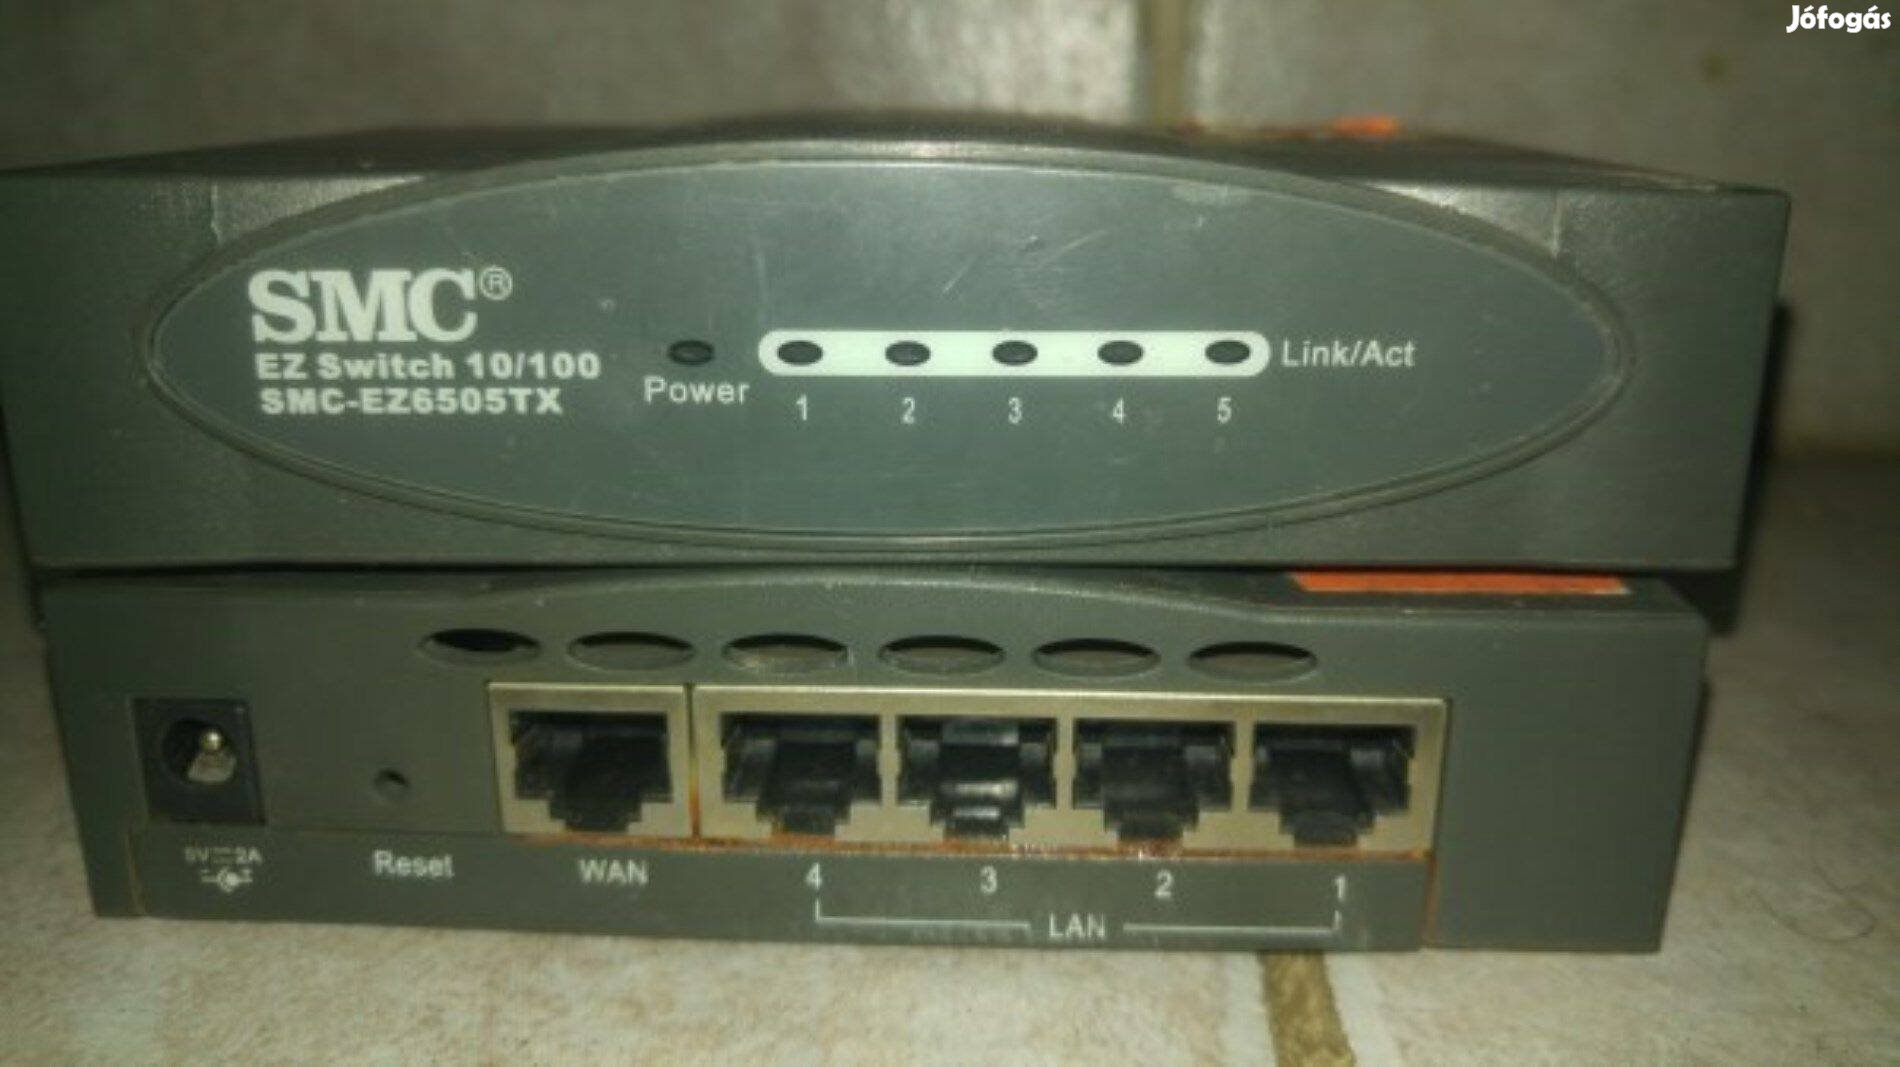 10/100 Mbps SMC switch